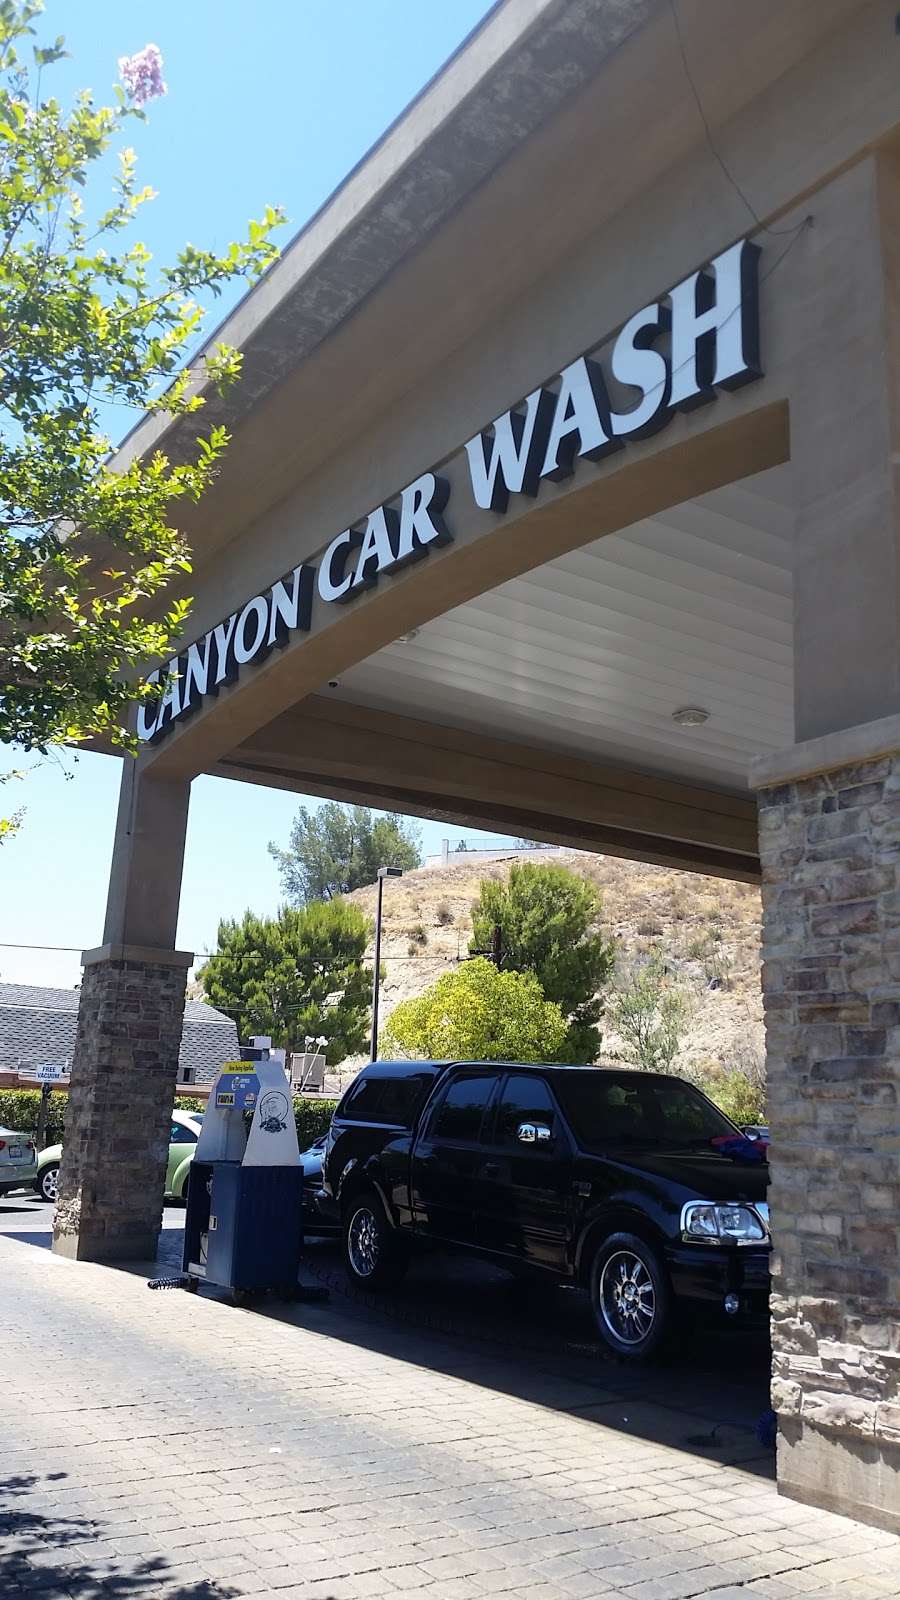 Canyon Car Wash | 18727 Soledad Canyon Rd, Santa Clarita, CA 91351, USA | Phone: (661) 250-0399